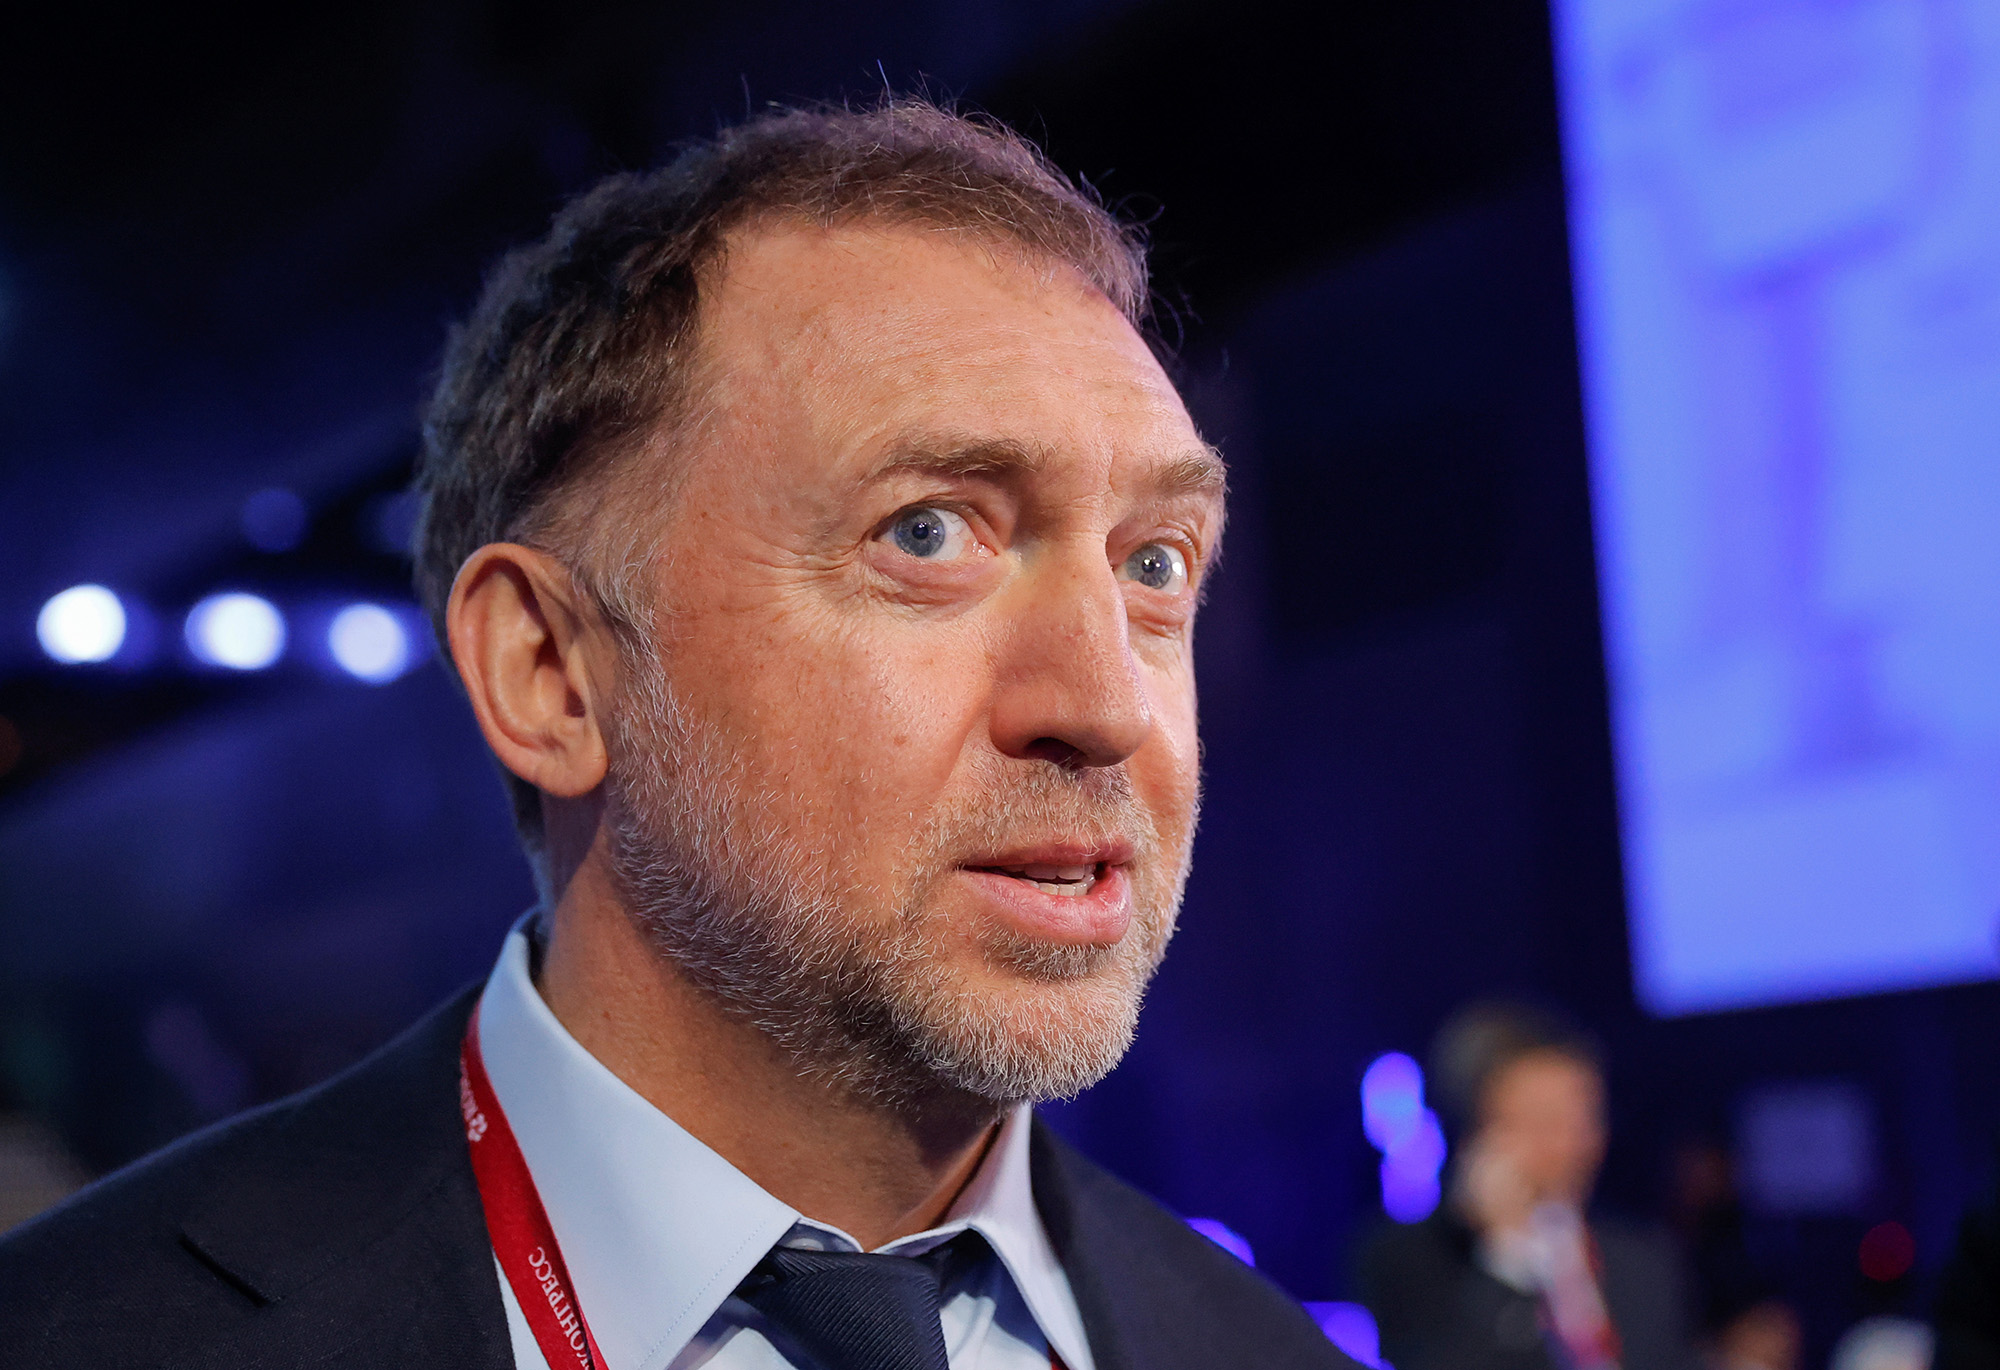 Oleg Deripaska attends the St. Petersburg International Economic Forum (SPIEF) in Saint Petersburg, Russia, on June 17.